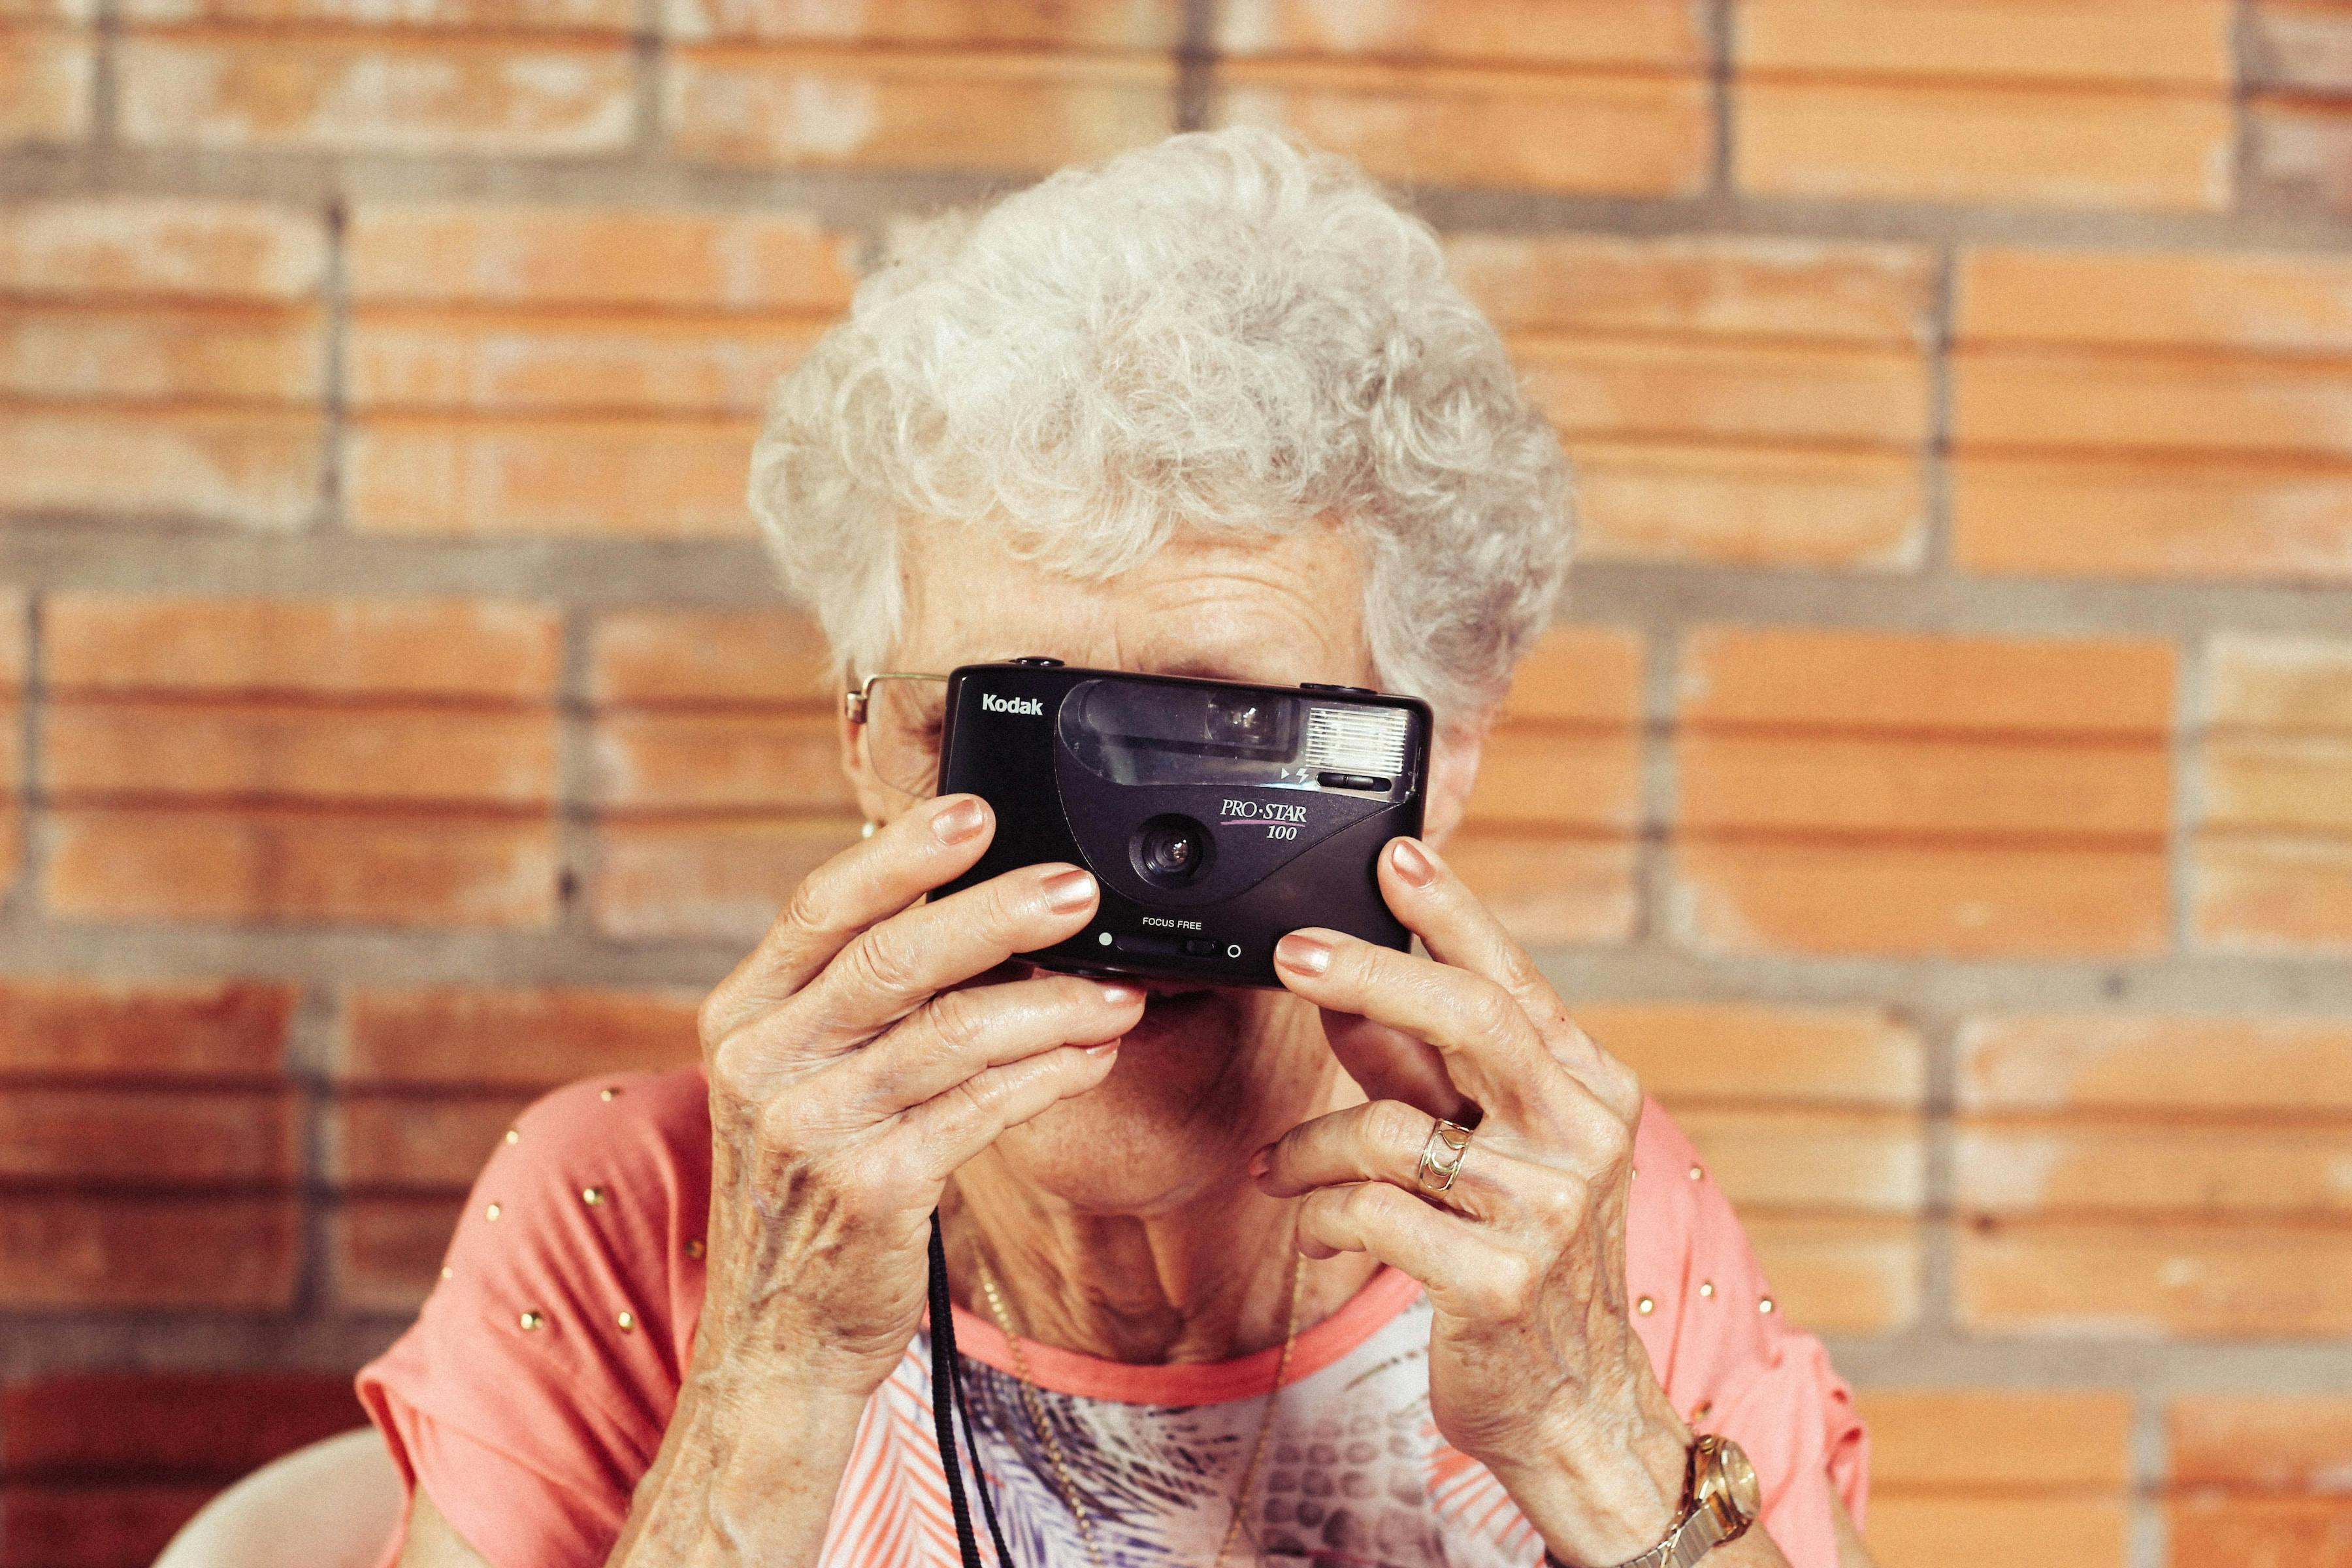 Mujer en edad madura sostiene una cámara analógica frente a su rostro, podemos ver en detalle sus arrugas, sus uñas esmaltadas y cabello blanco. La imagen tiene tonos cálidos y evoca alegría, resiliencia y nostalgia.